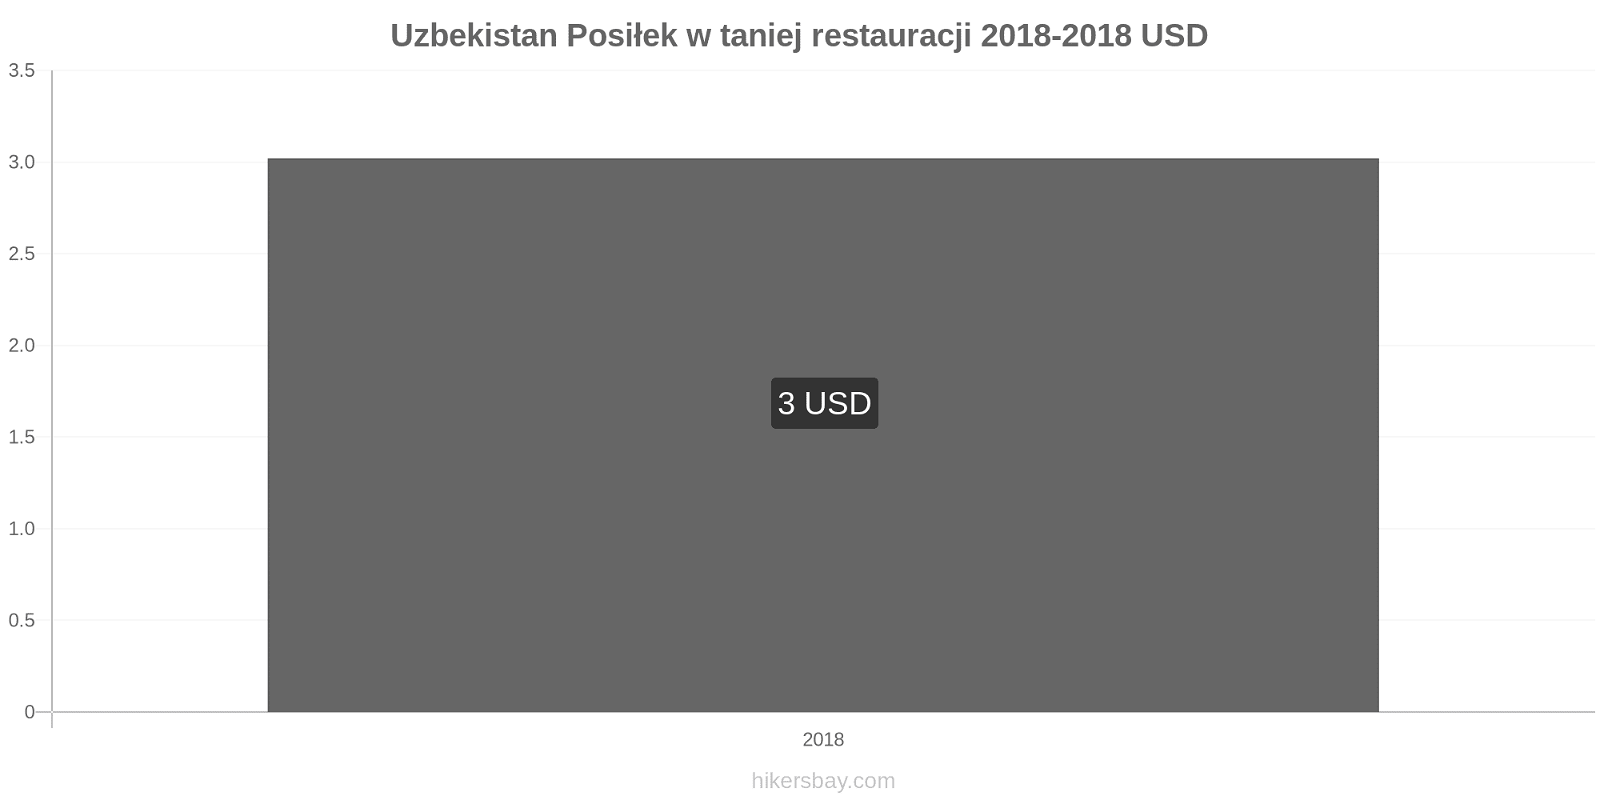 Uzbekistan zmiany cen Posiłek w taniej restauracji hikersbay.com